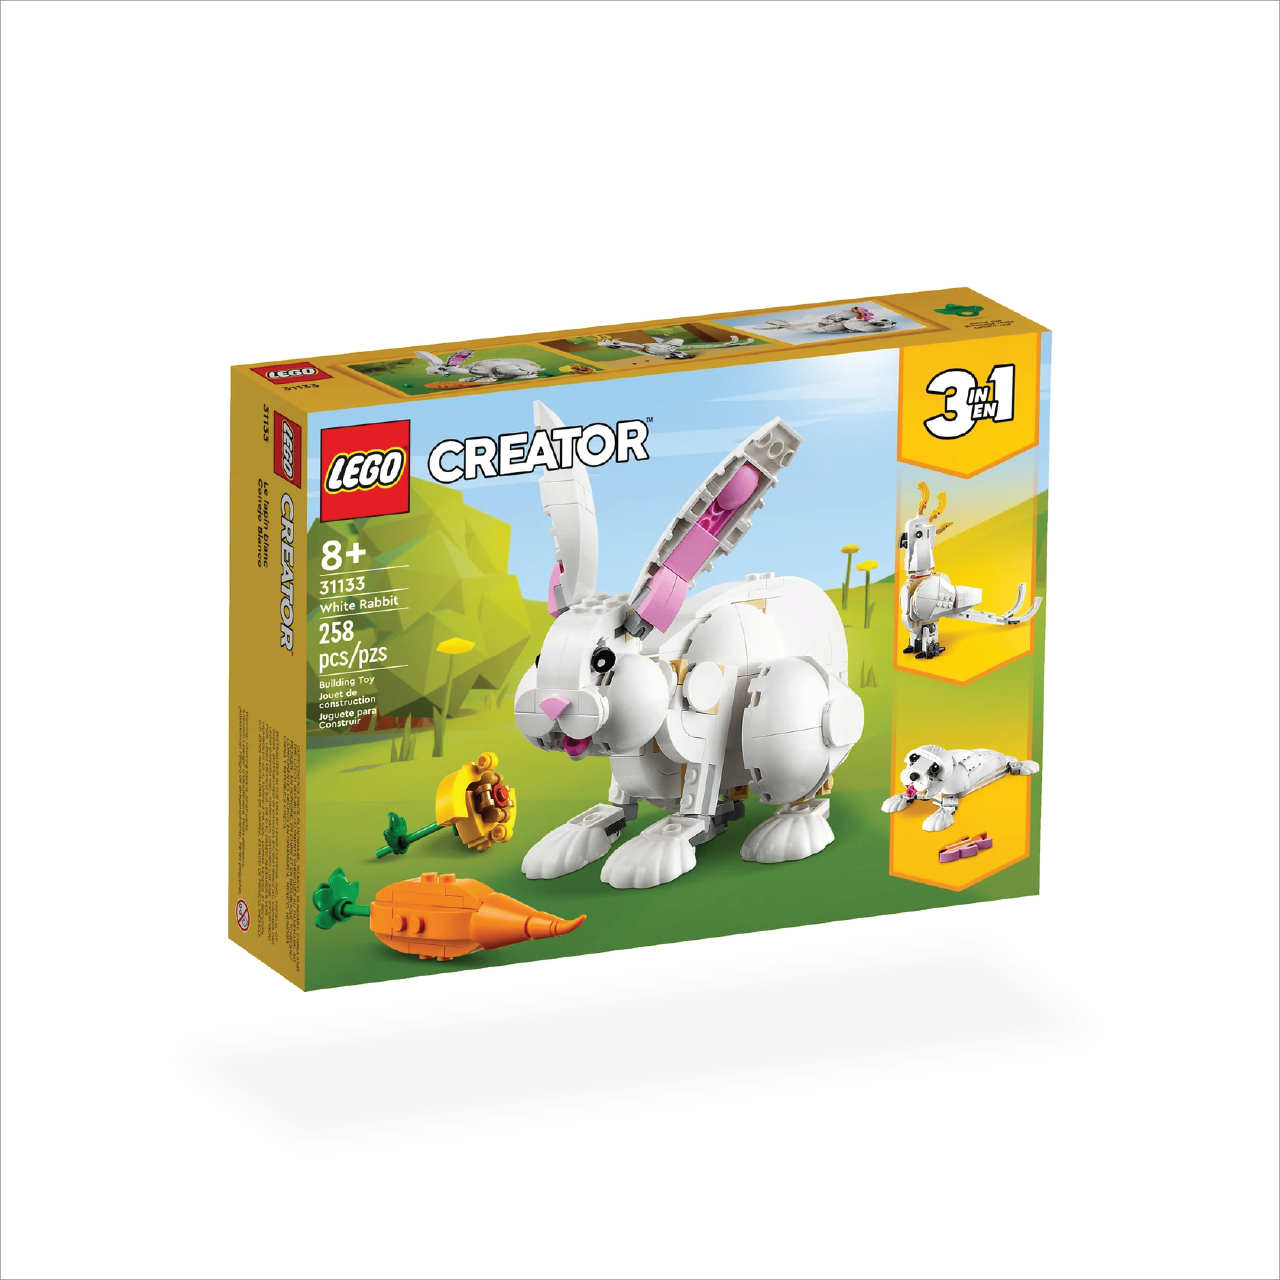 LEGO 31133 White Rabbit